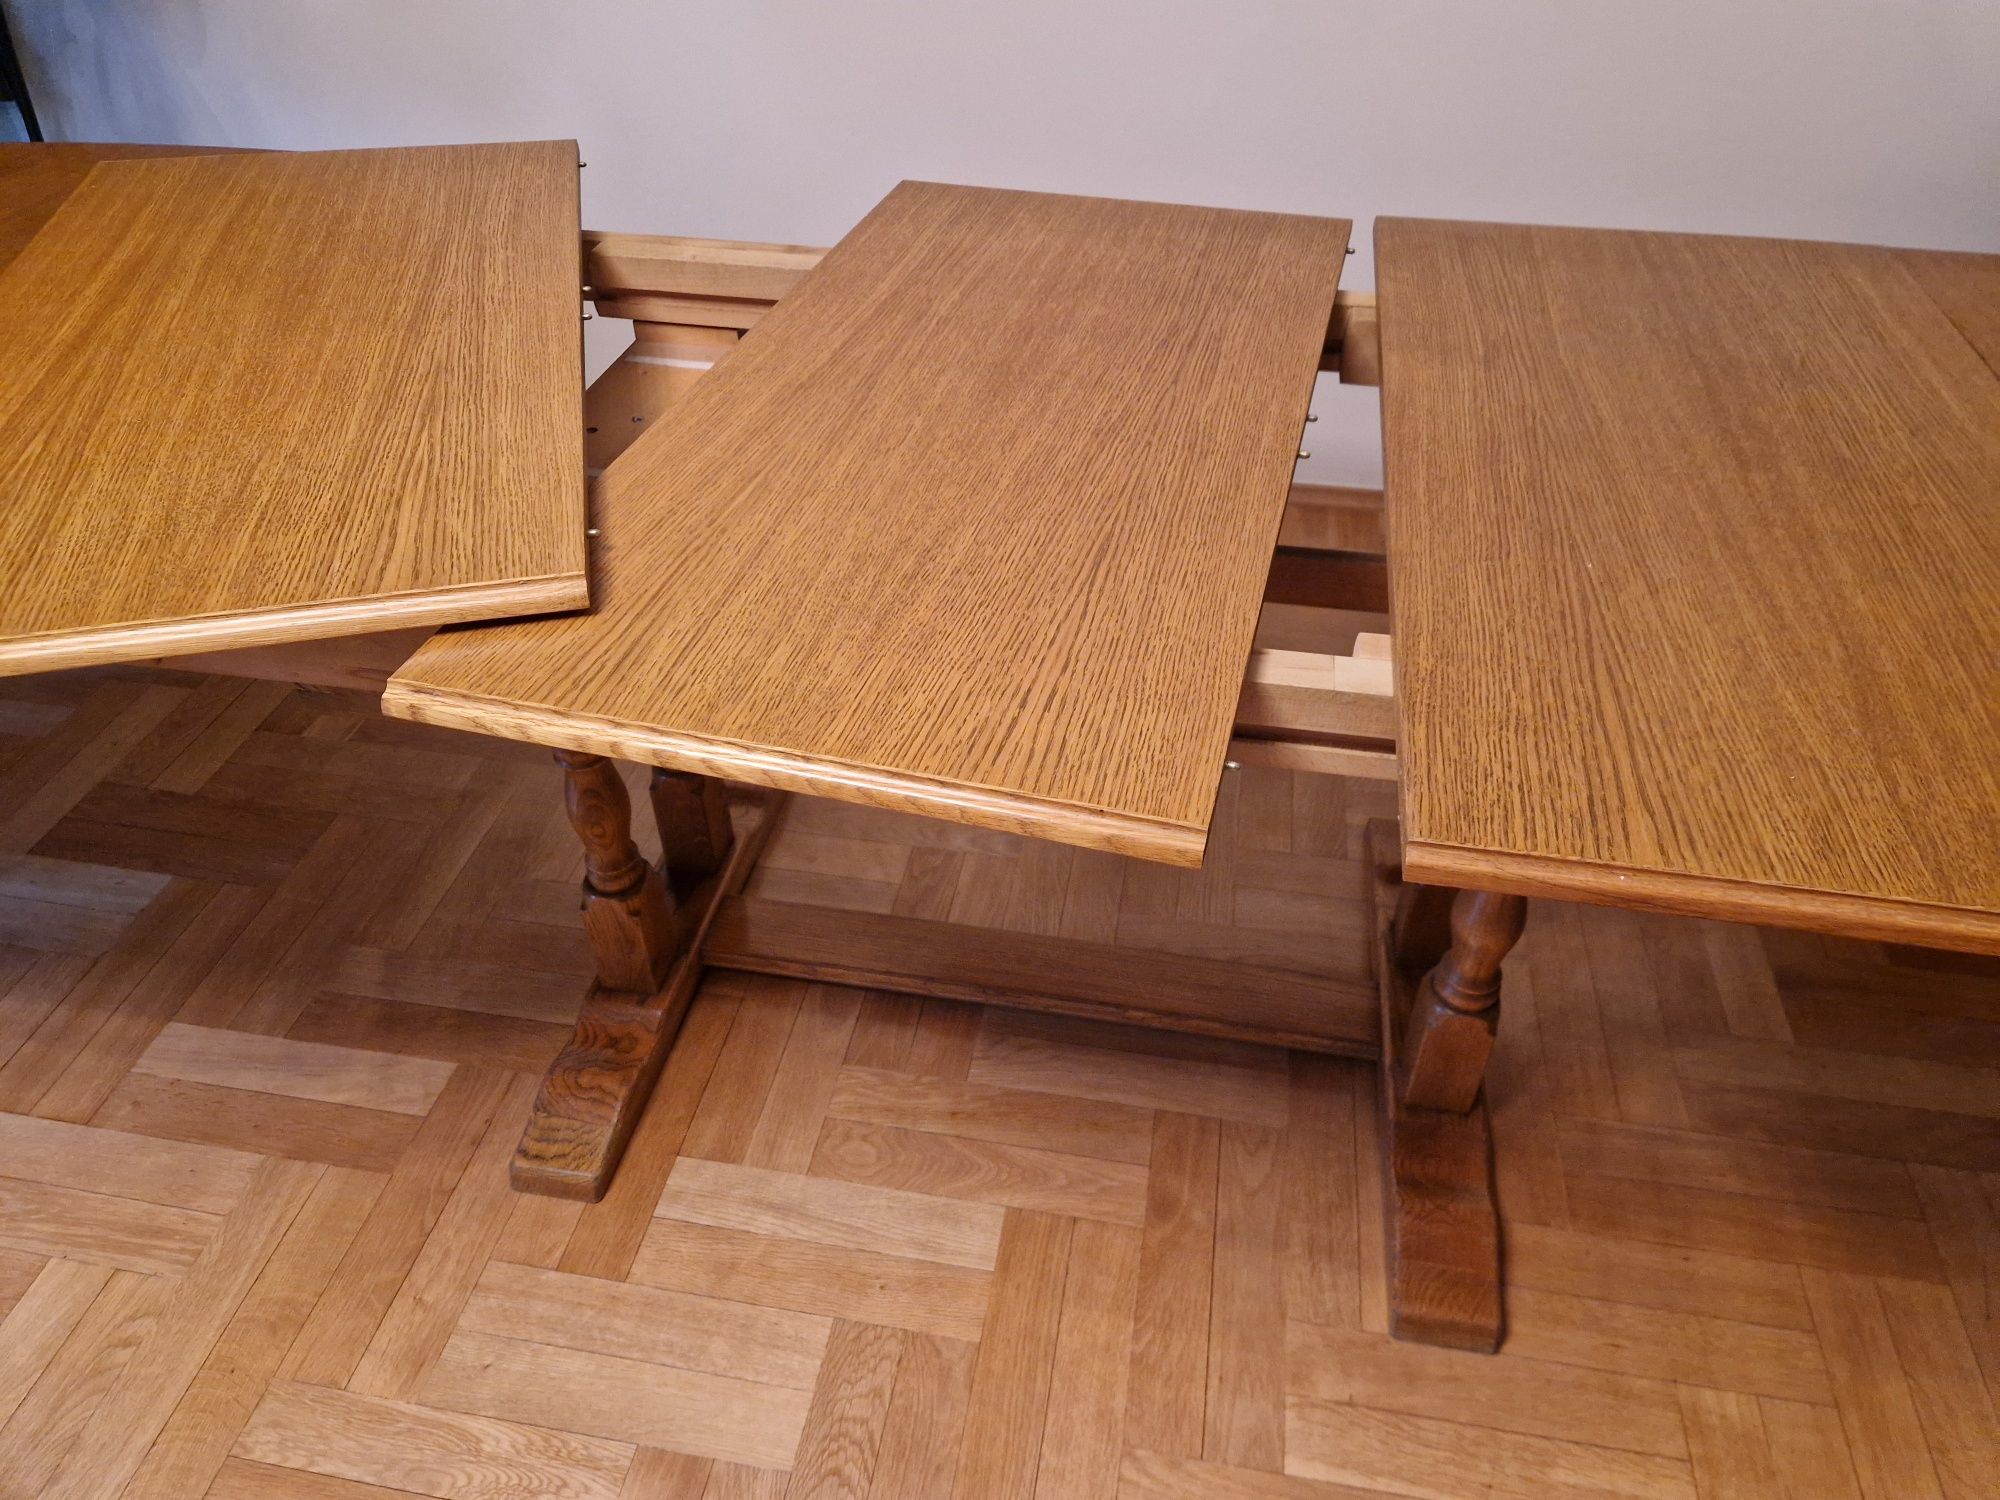 Dębowy stół, duży, 1,5-3 m